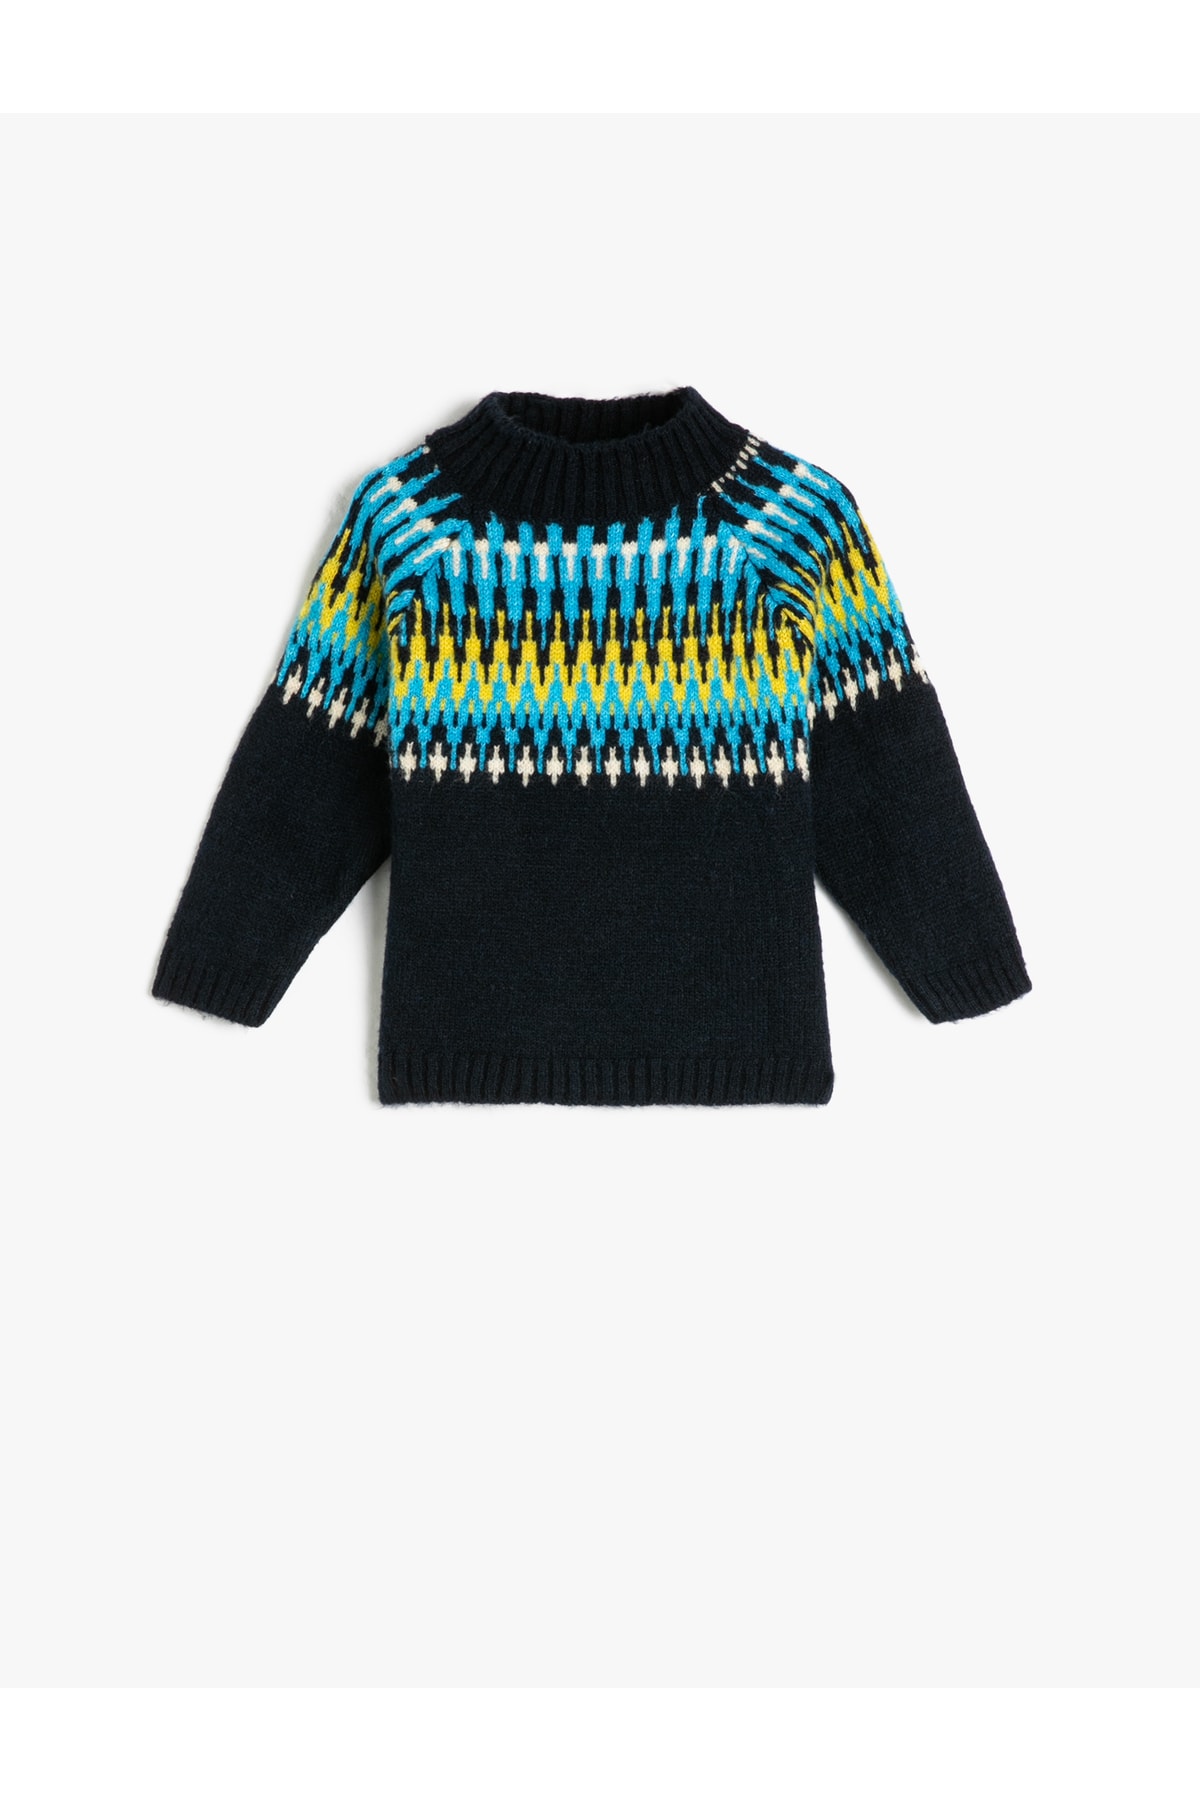 Levně Koton Sweater Knit High Neck Long Sleeve Ethnic Patterned